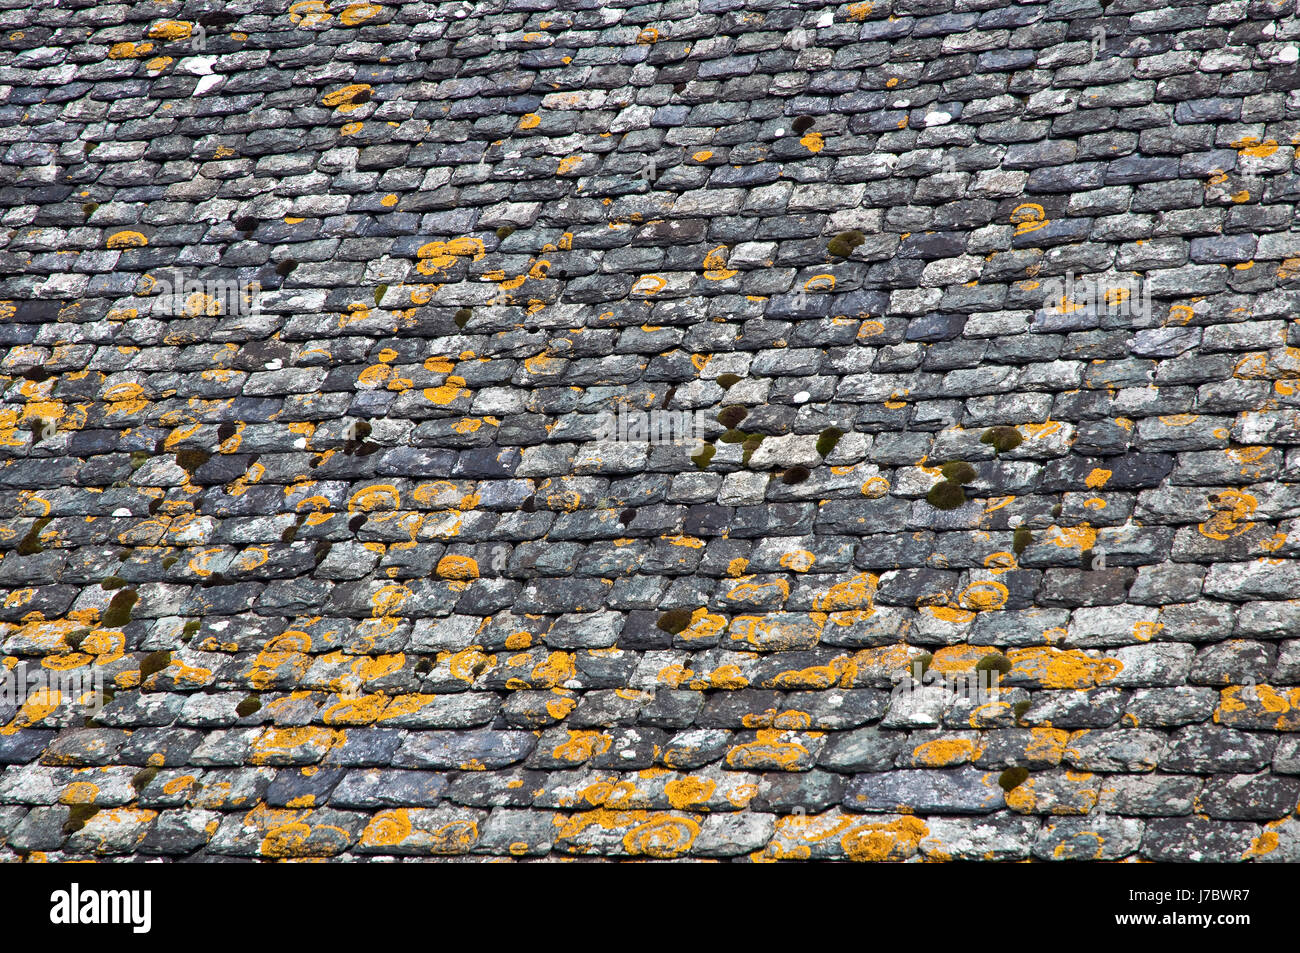 Sur le toit en ardoise ardoise prévue des bardeaux de toiture toiture en bardeaux recouverts de pierre naturelle Banque D'Images